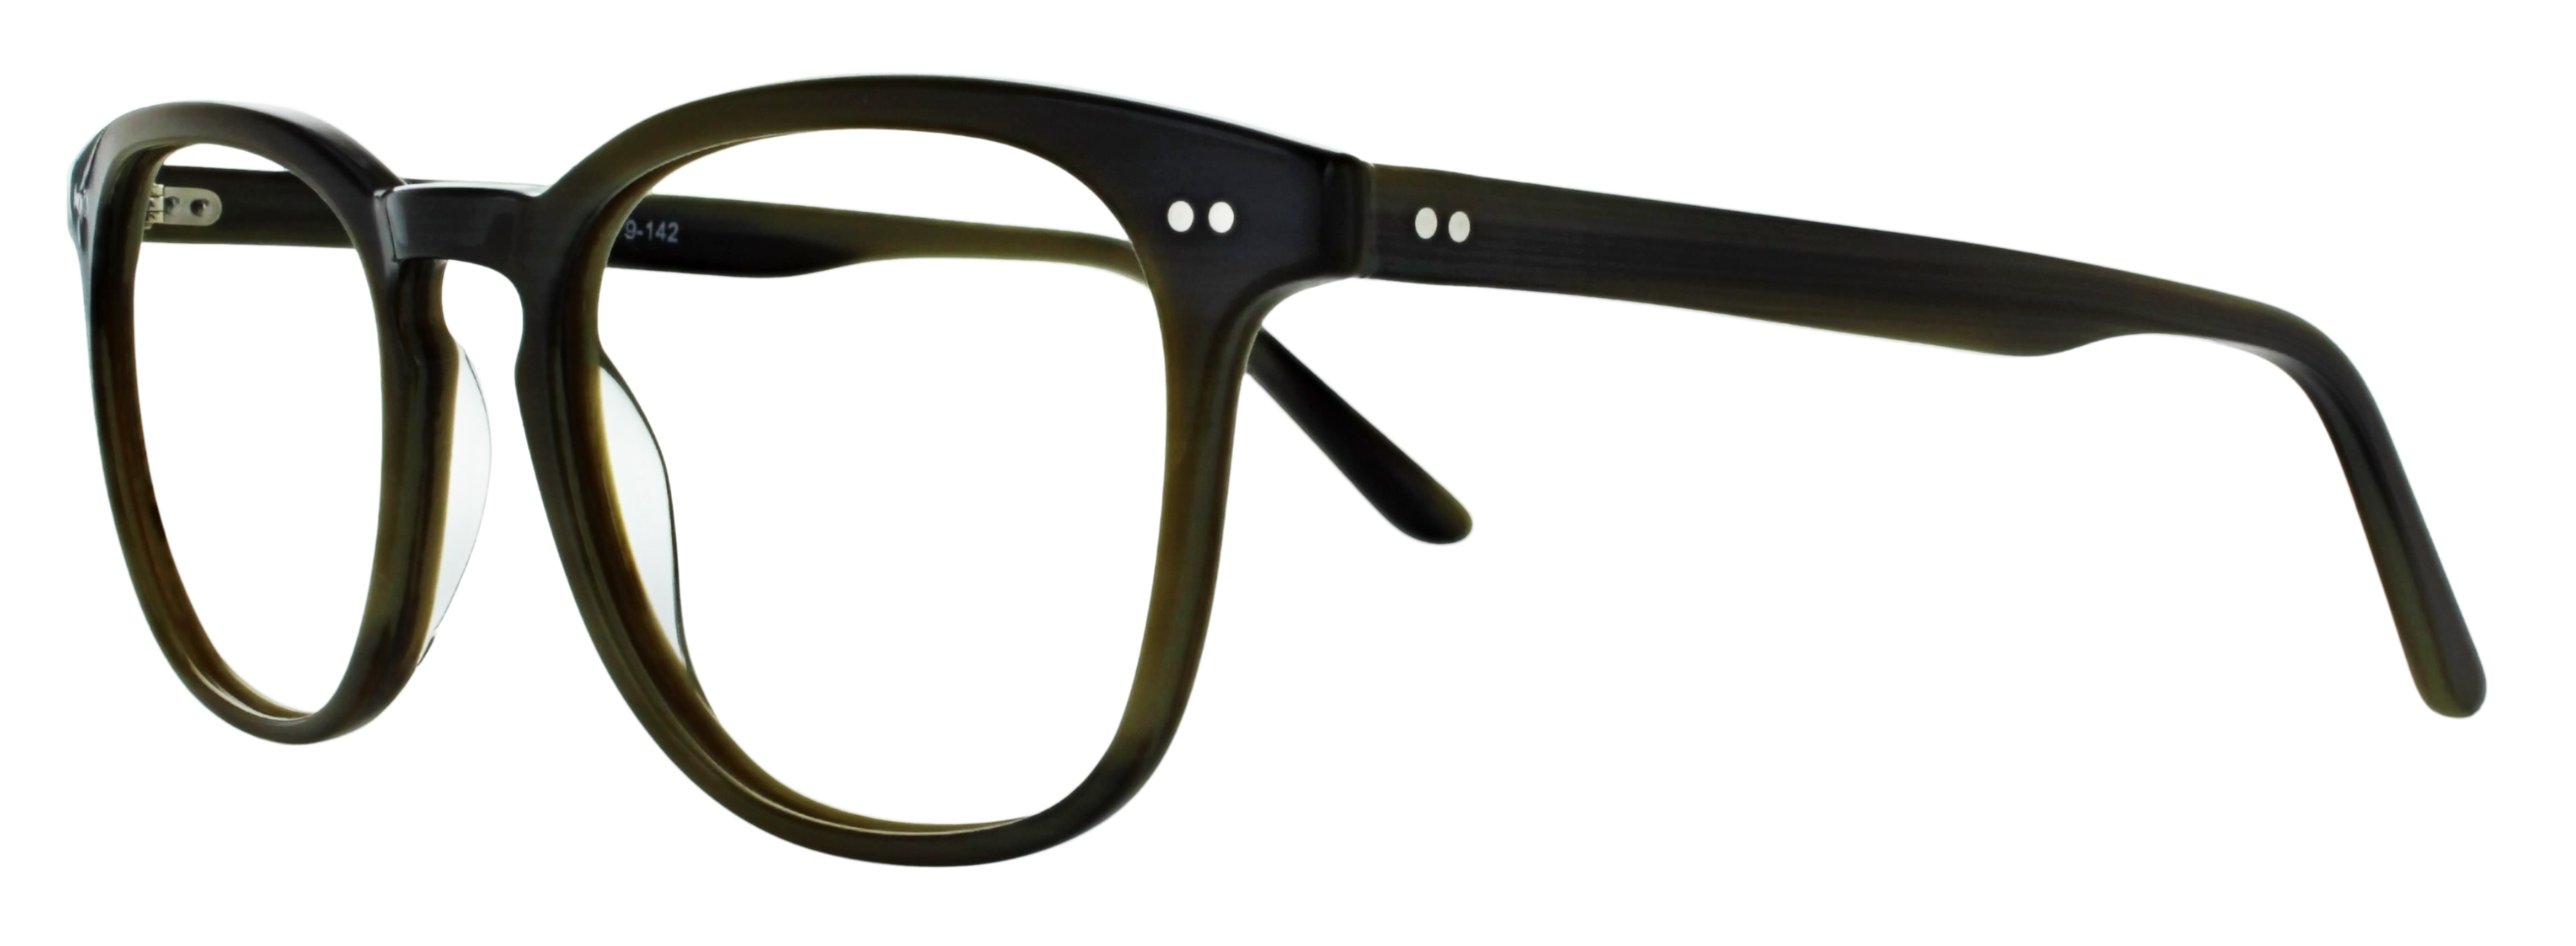 Das Bild zeigt die Korrektionsbrille 138261 von der Marke Abele Optik in olive - grau.